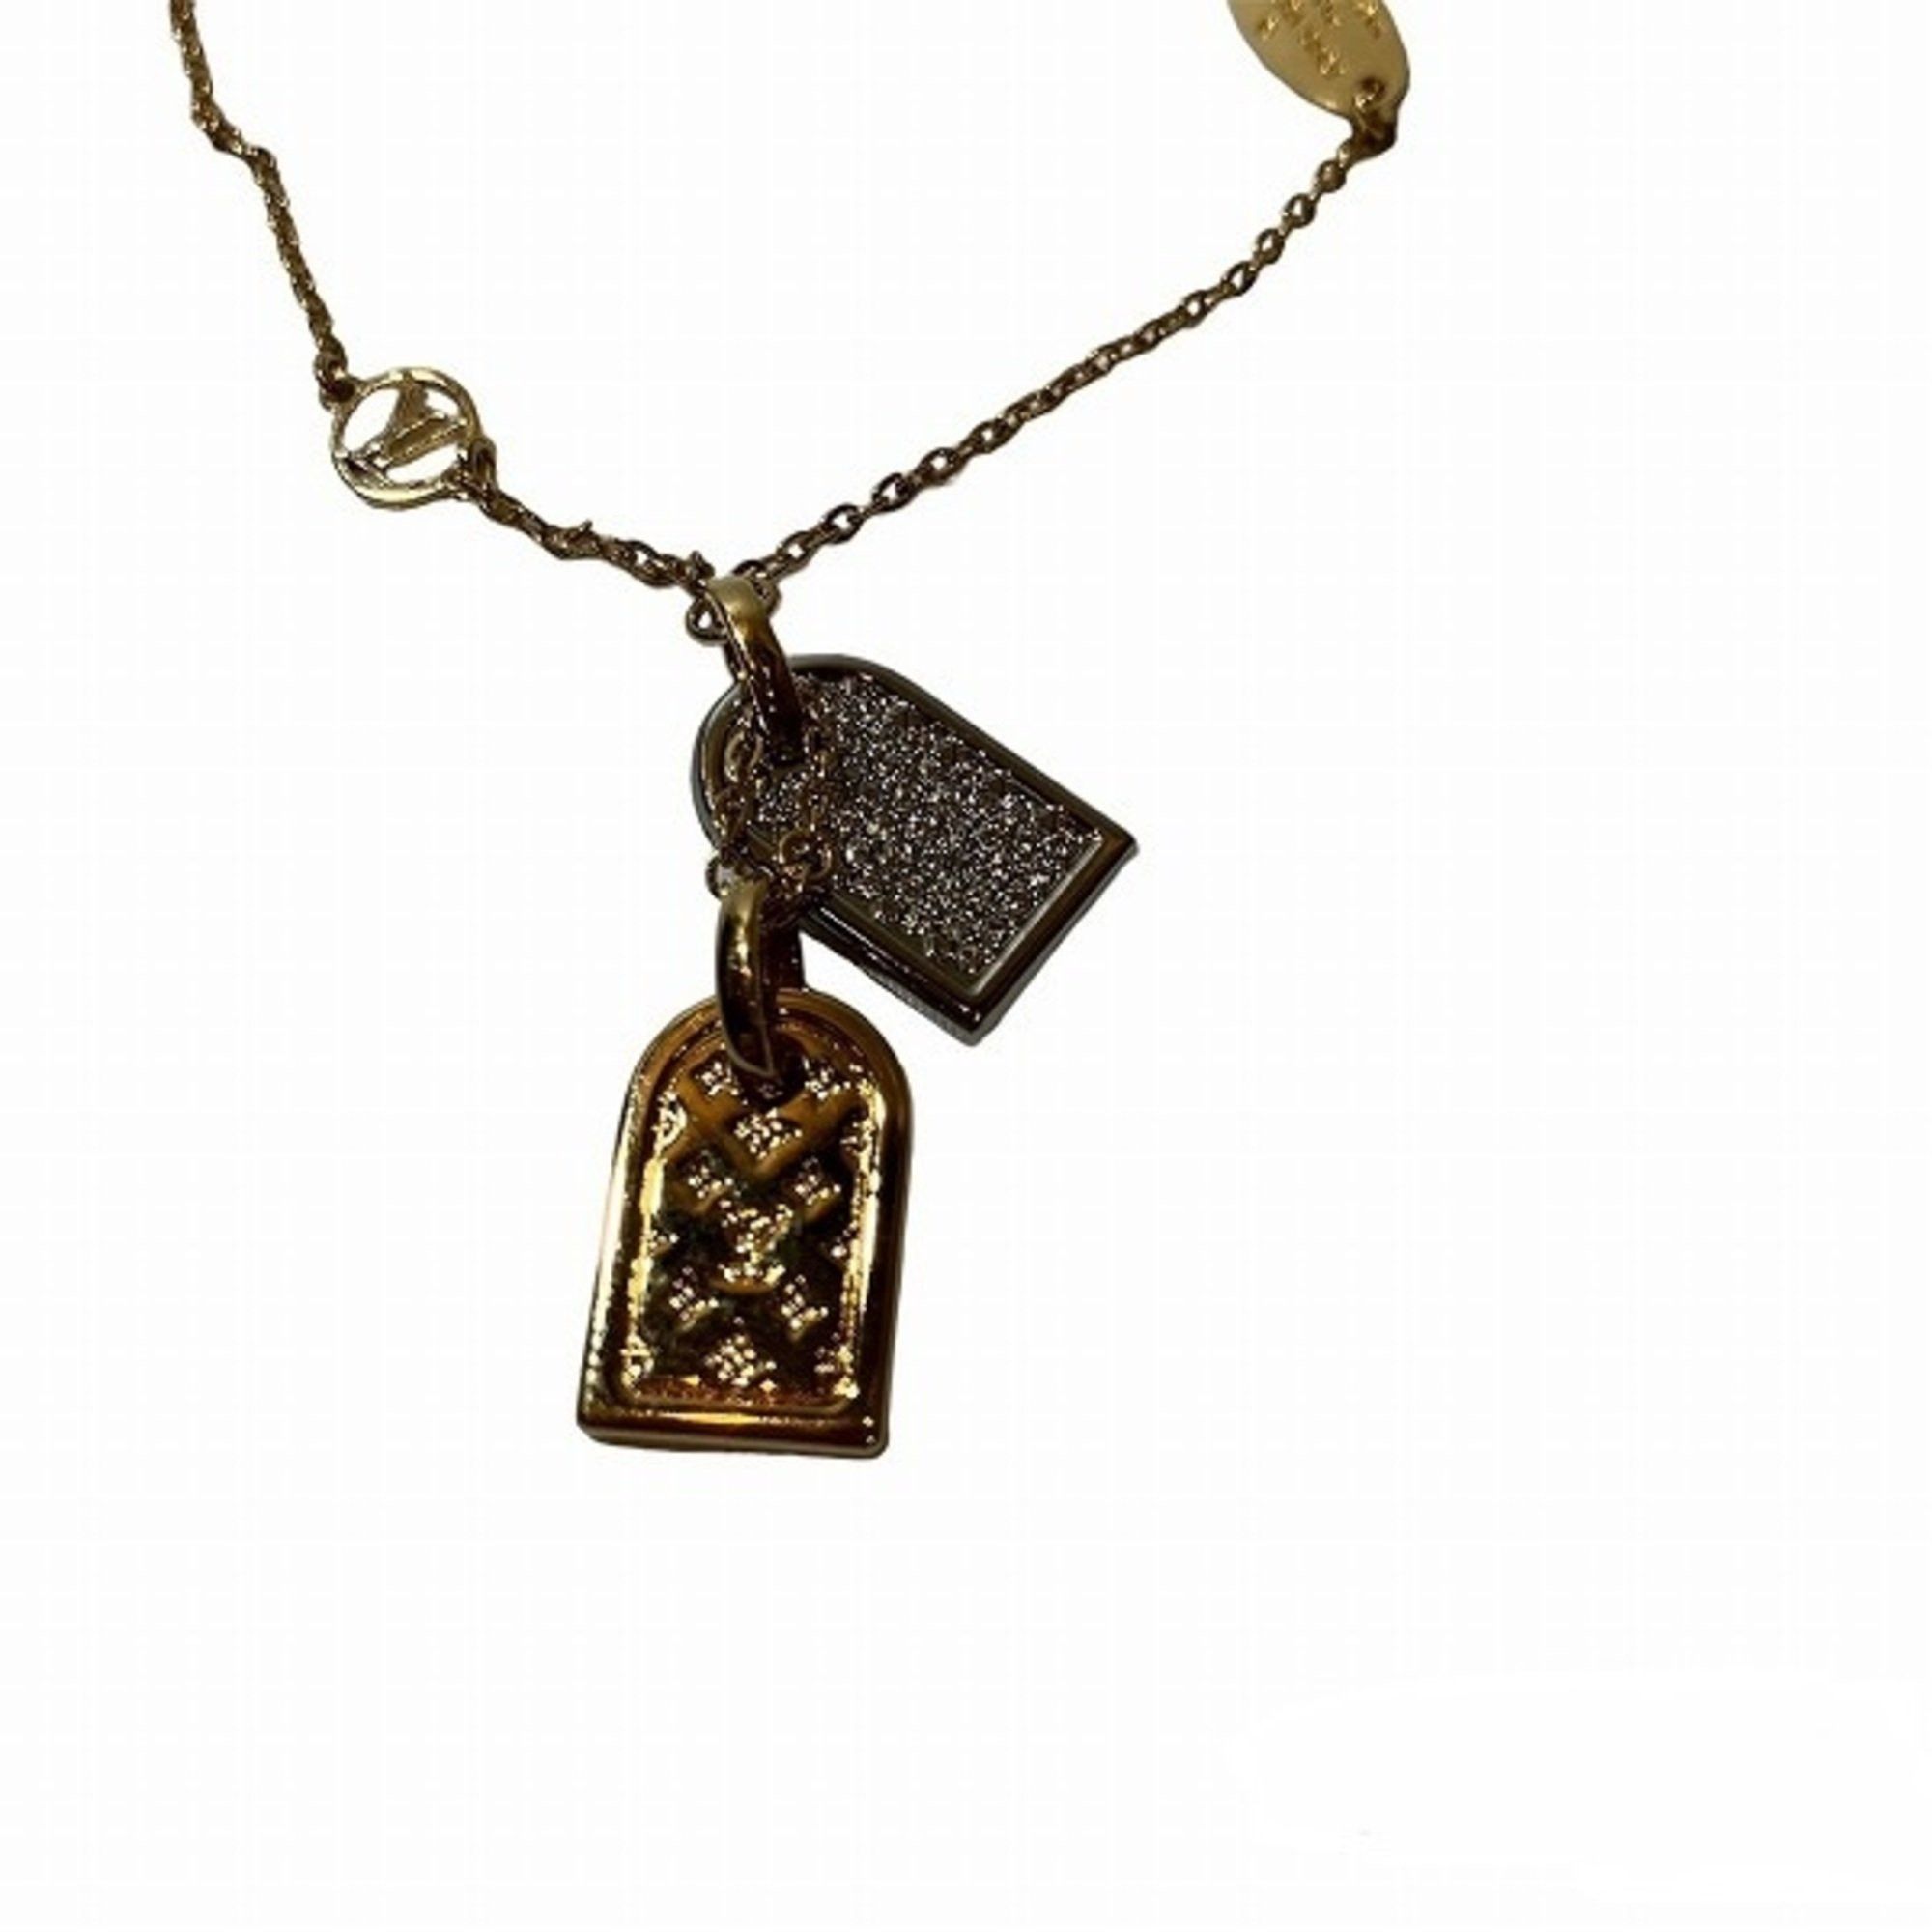 Louis Vuitton Precious nanogram tag bracelet (M00579)  Classic bracelets,  Women accessories jewelry, Louis vuitton